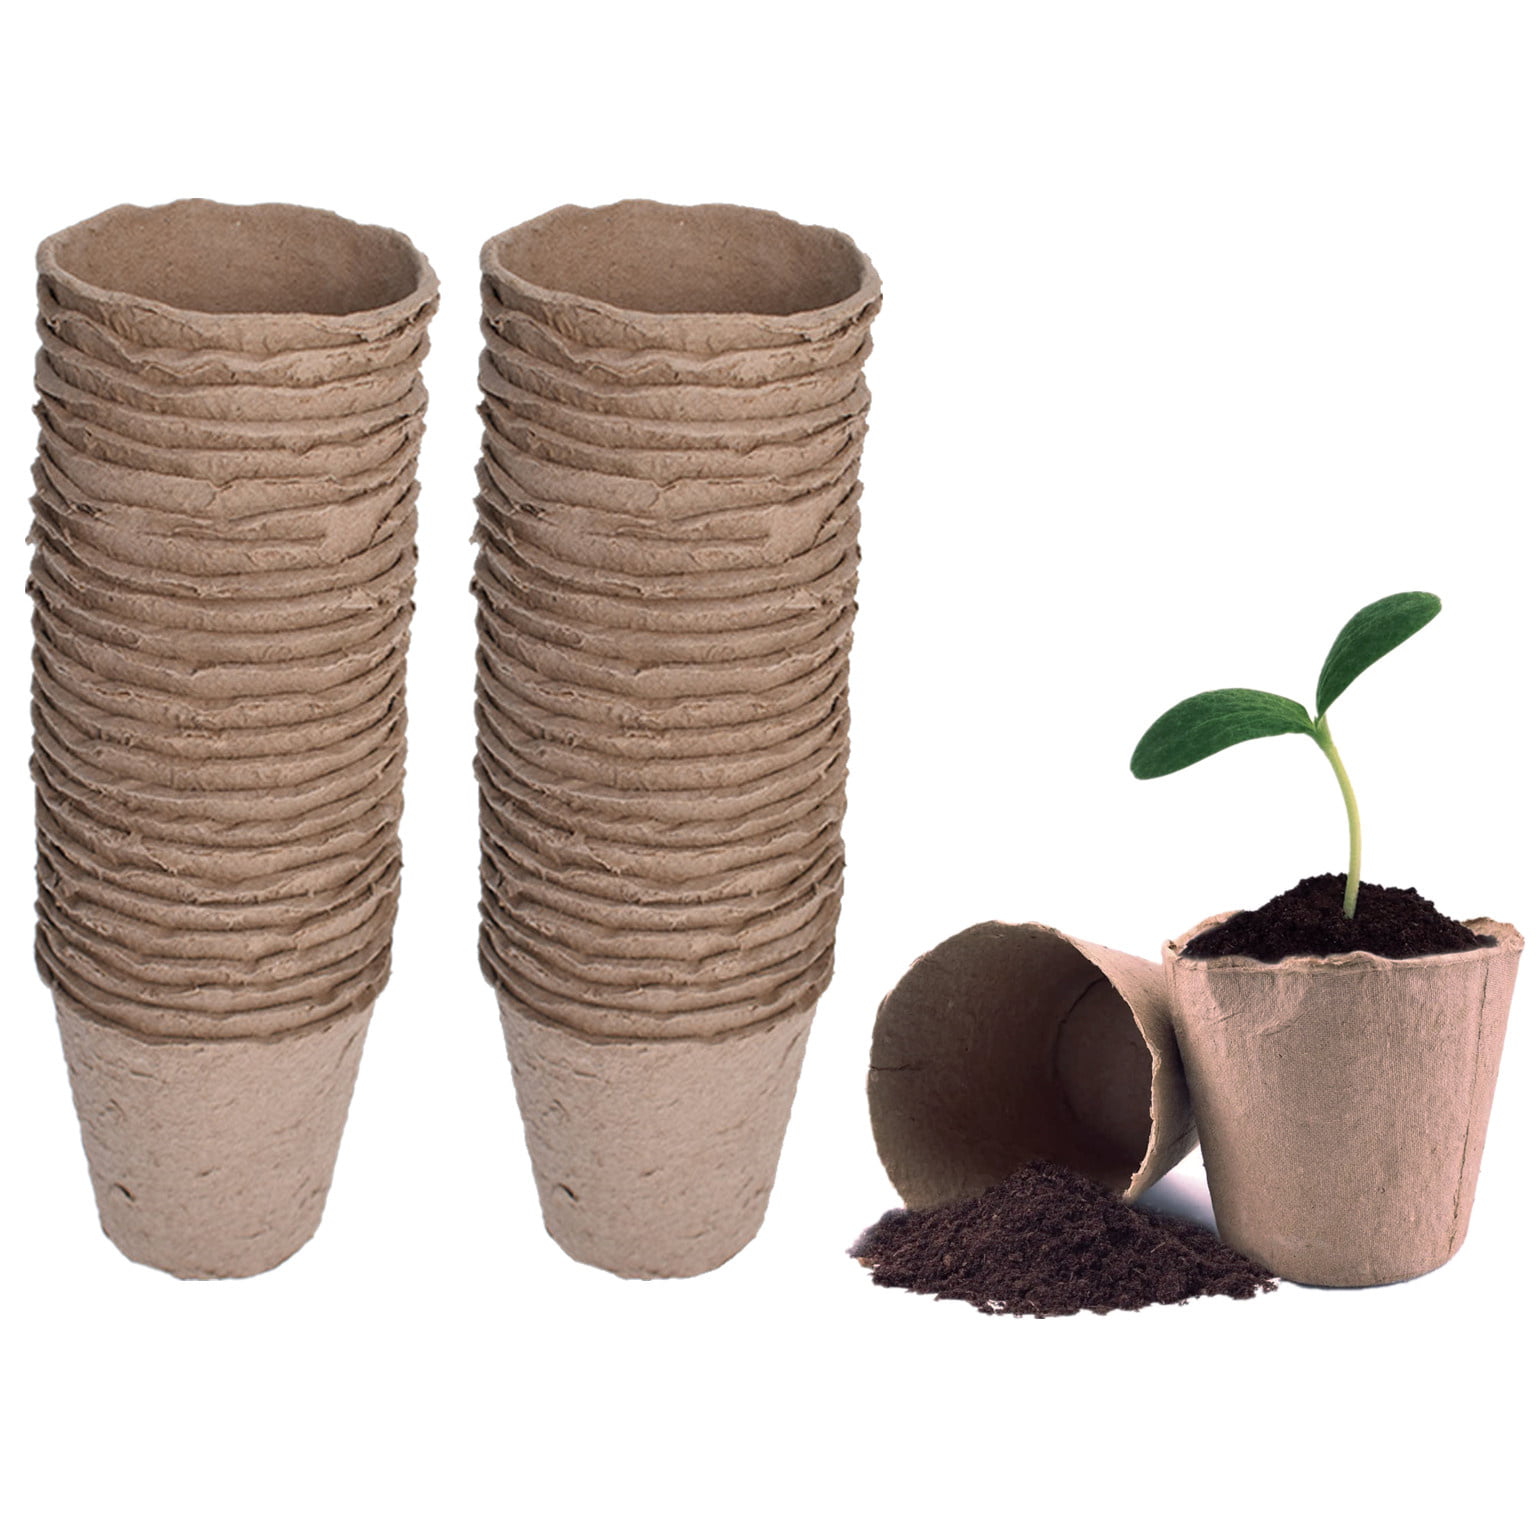 Nursery Pots Biodegradable Paper Pulp Peat Pots Plant Garden 100 Pack US 100pcs 